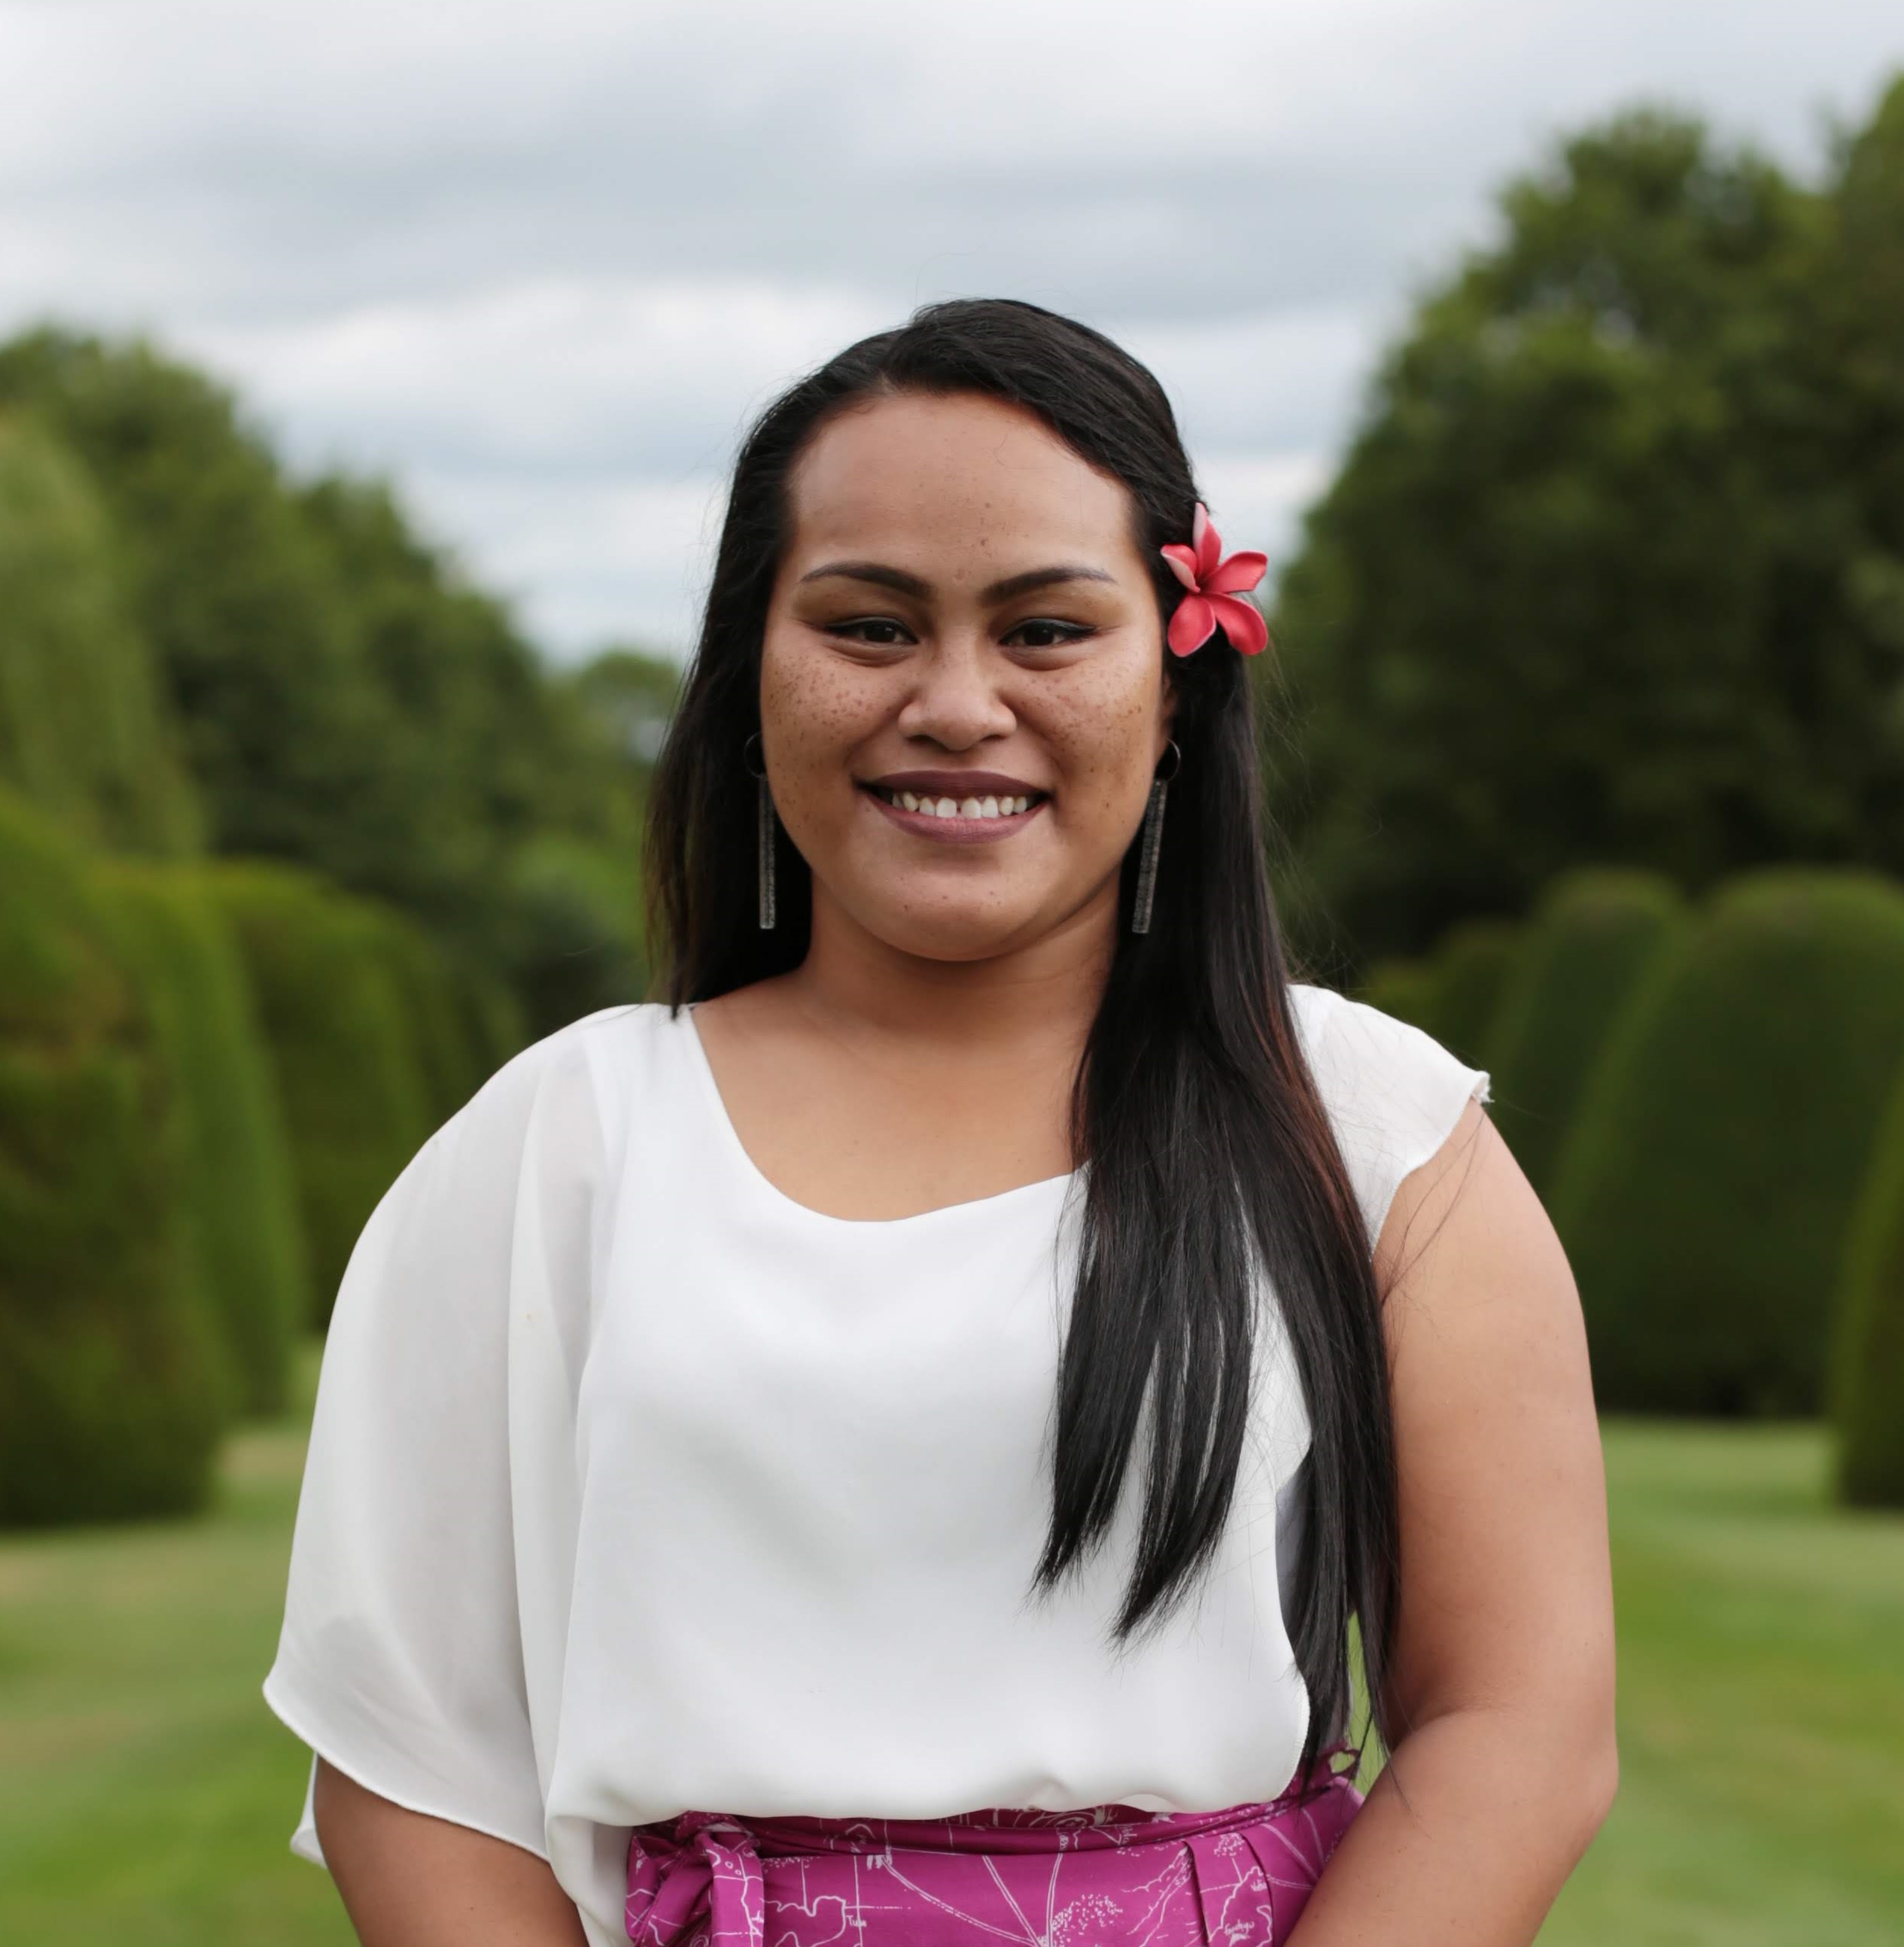 Petronilla Molioo Maraeliga 2018 Queen's Young Leader from Samoa